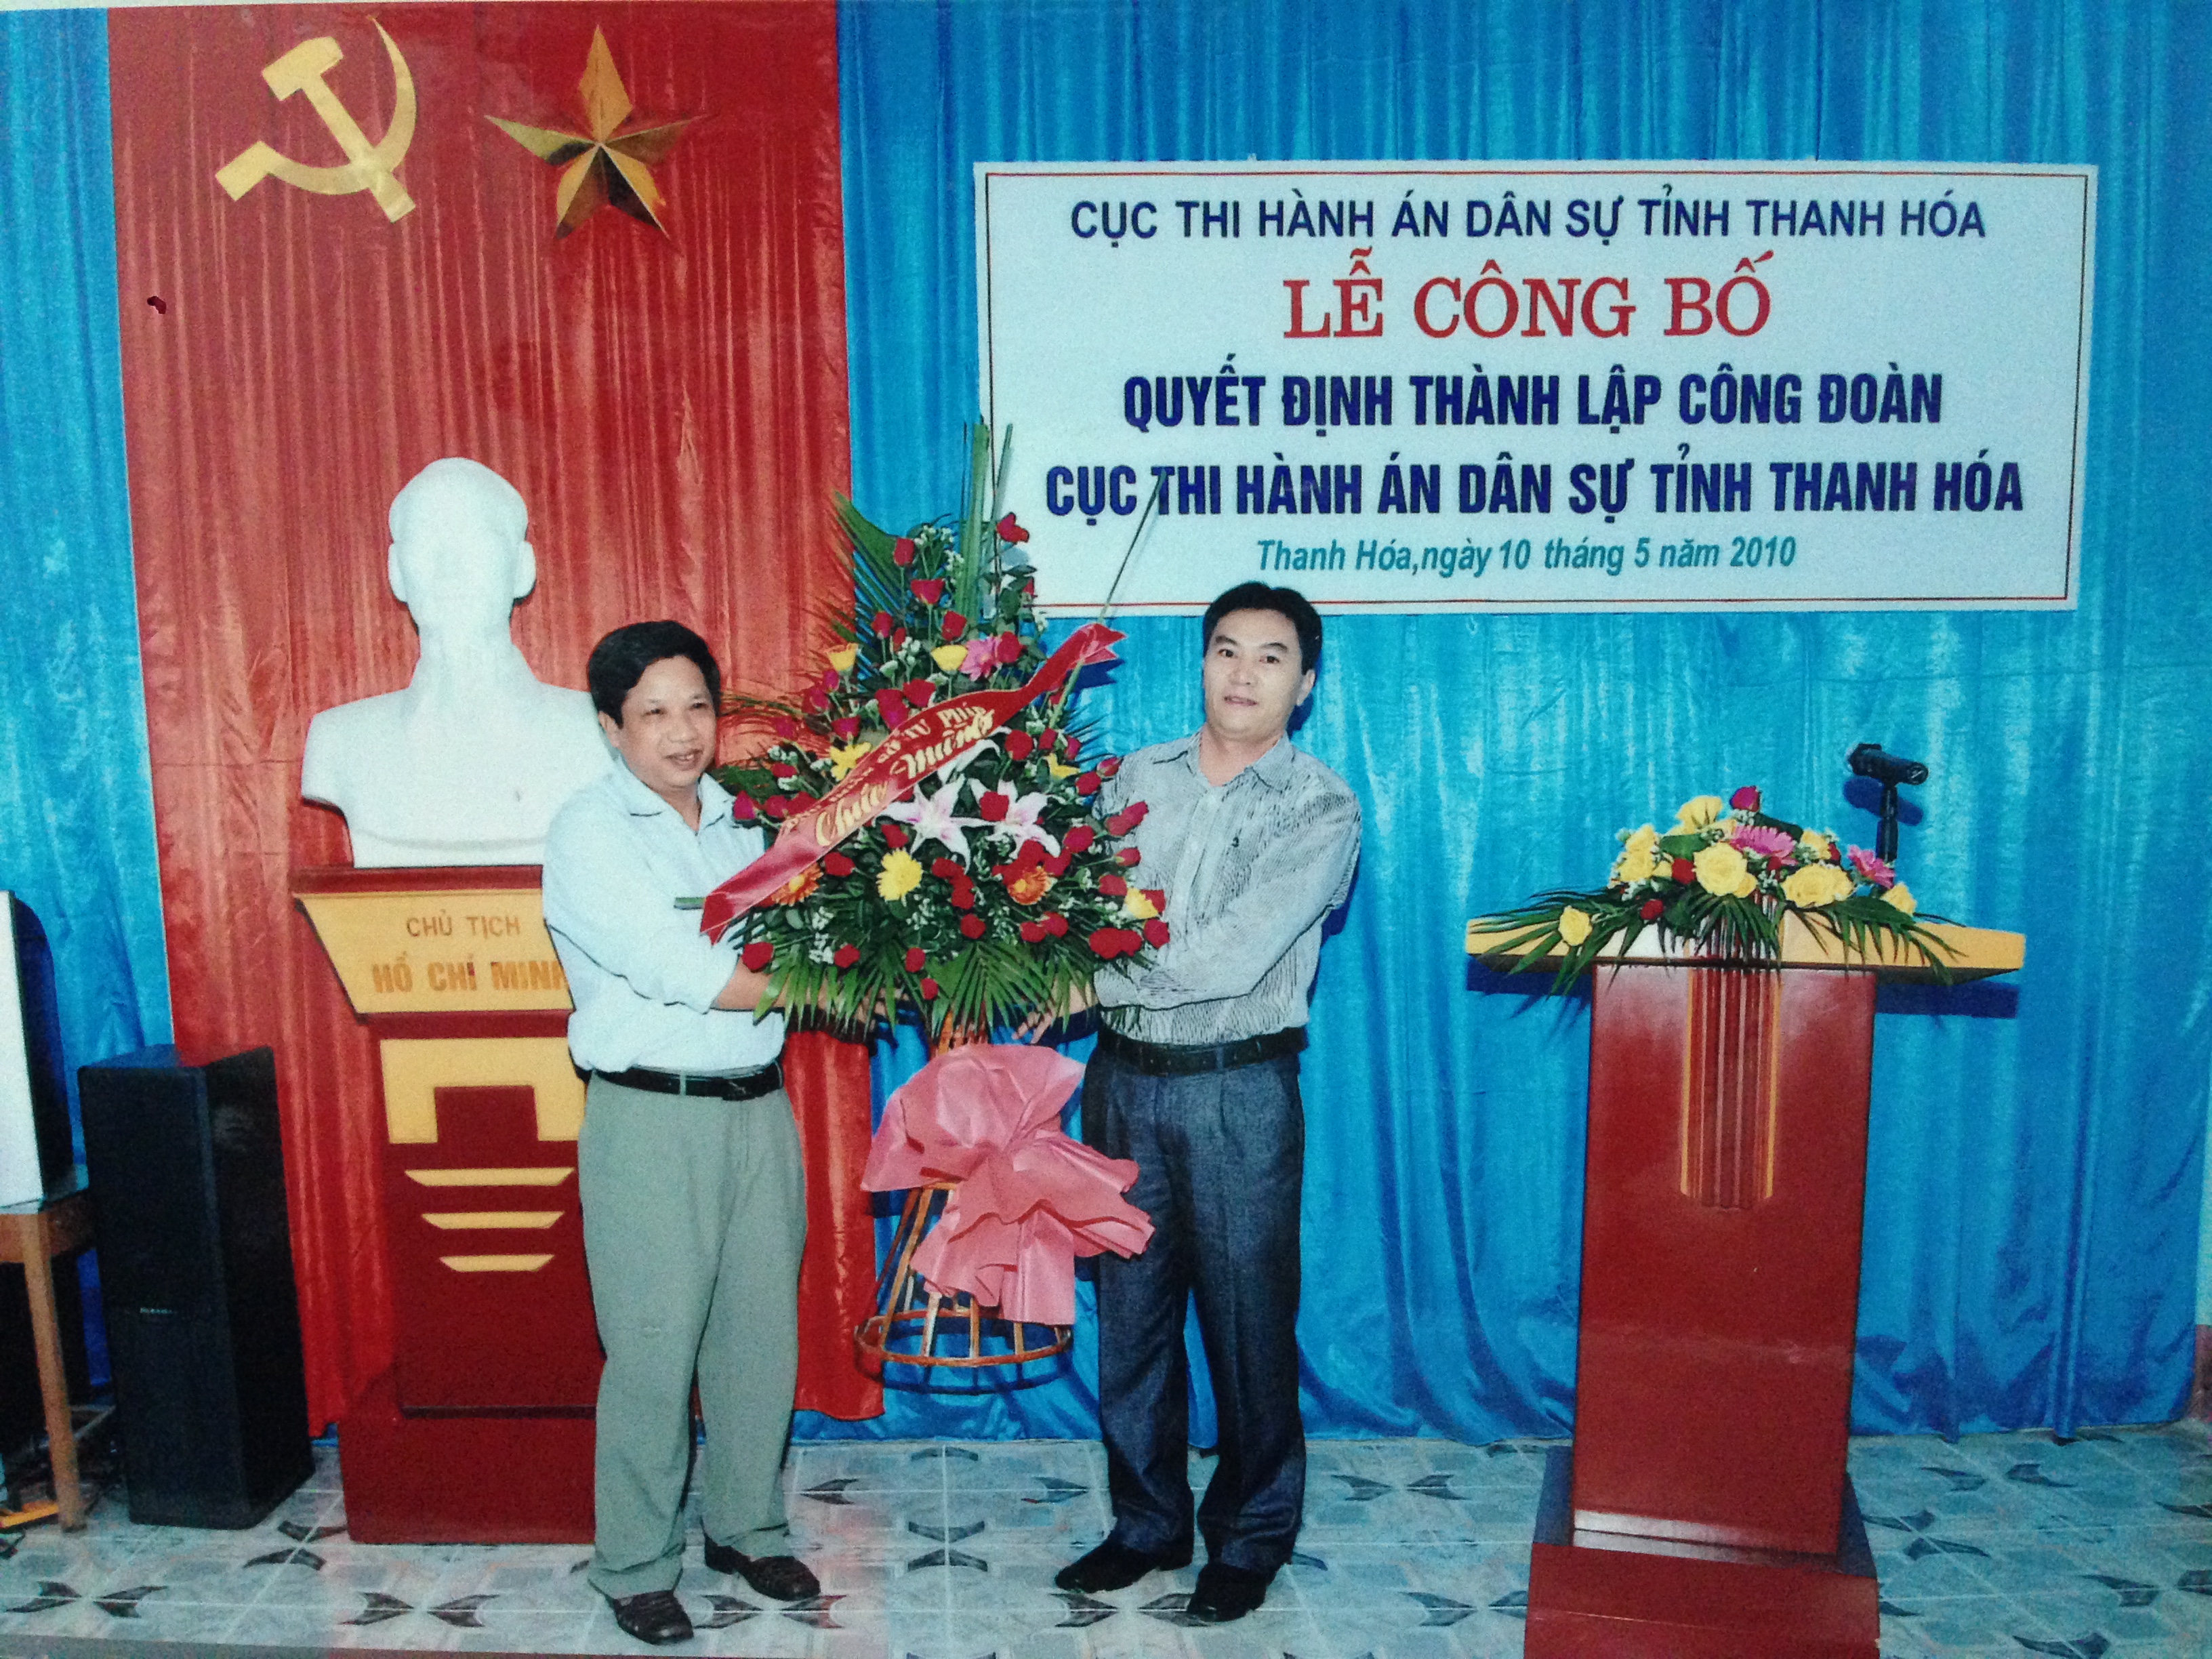 Lễ Công bố quyết định thành lập Công đoàn Cục Thi hành án dân sự tỉnh Thanh Hóa